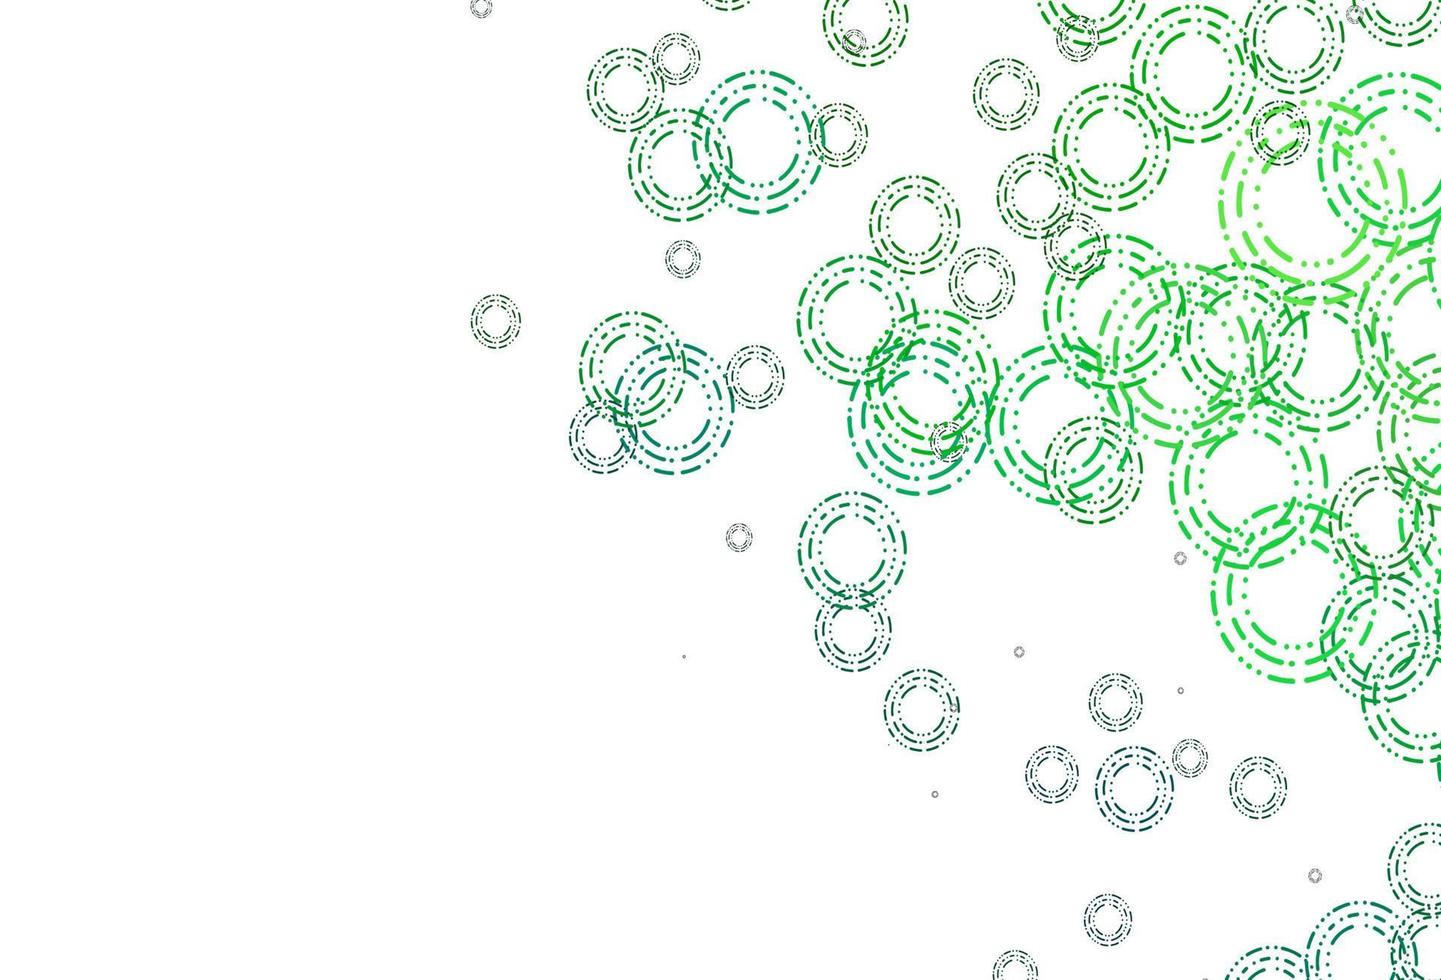 lichtblauw, groen vector sjabloon met cirkels.